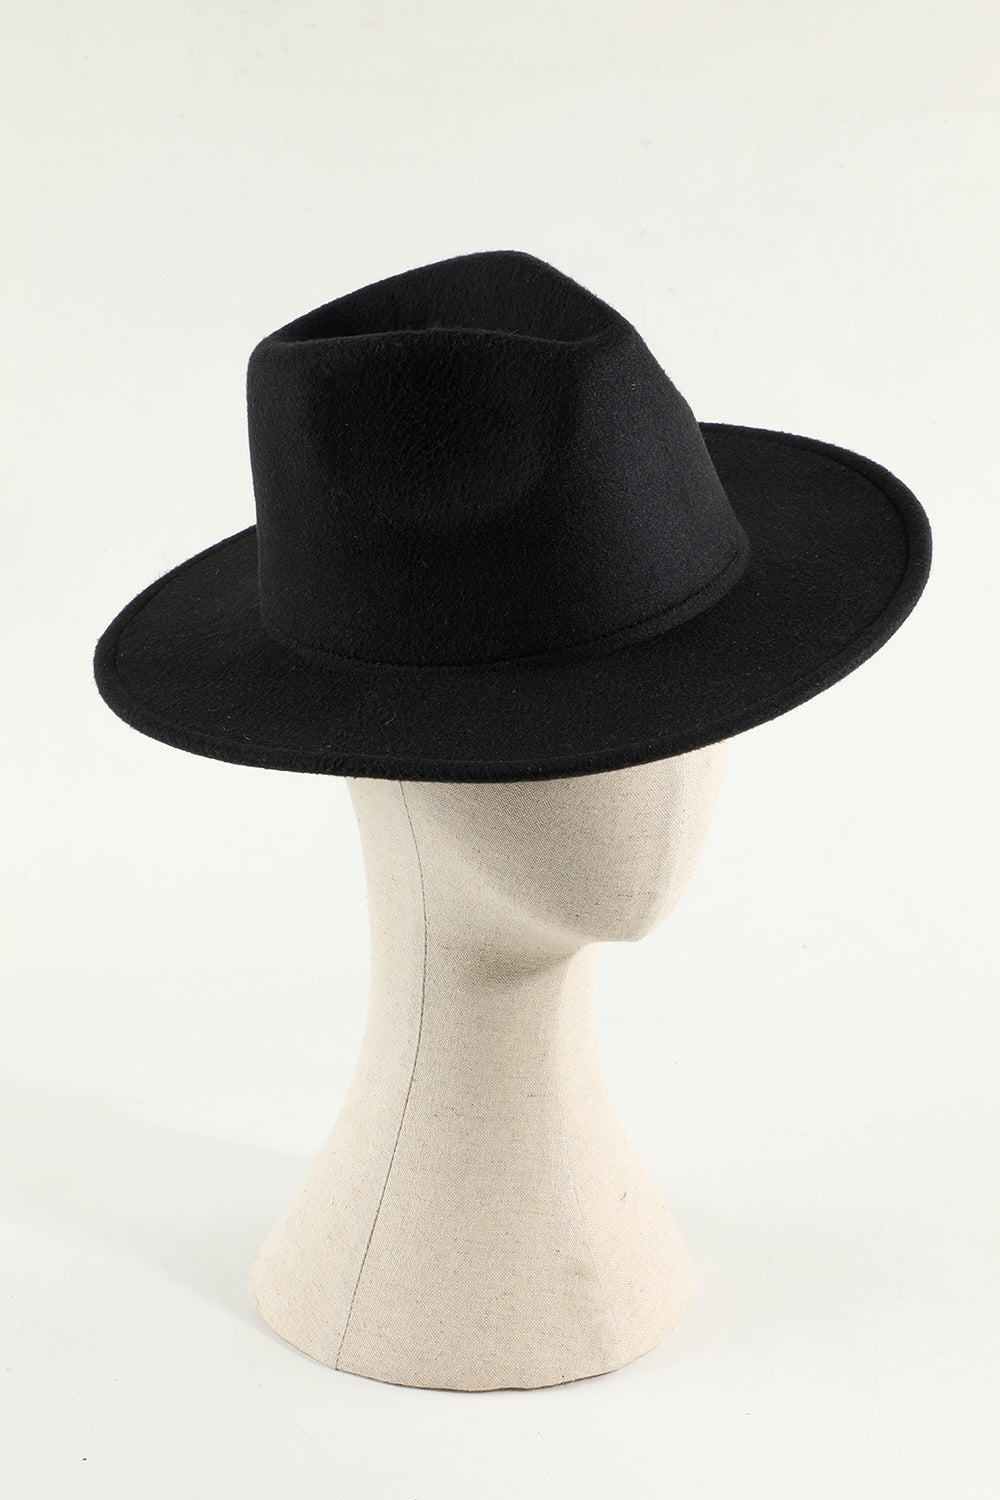 Schwarzer formaler Hut